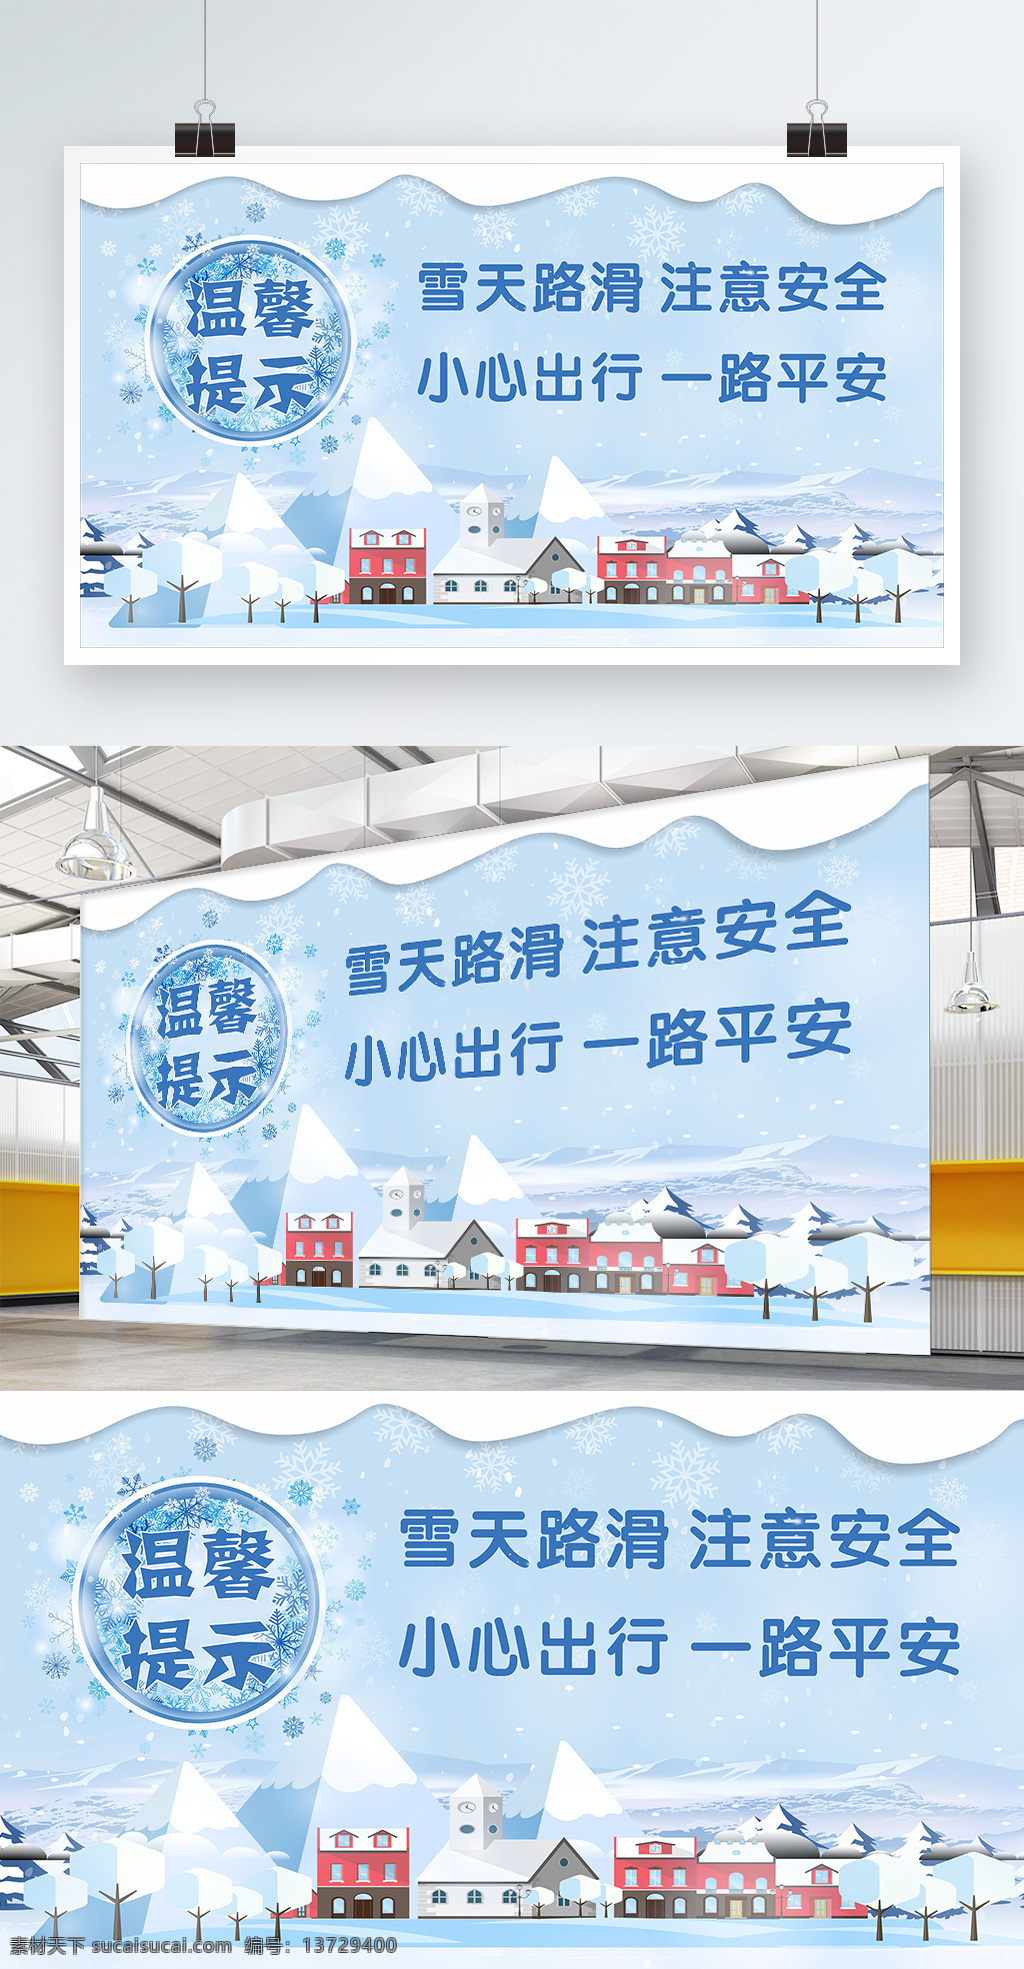 雪天 温馨 提示 公益 展板 模板 白色 大气 房屋 公益展板 卡通 蓝色 平面广告 温馨提示 雪花 展架